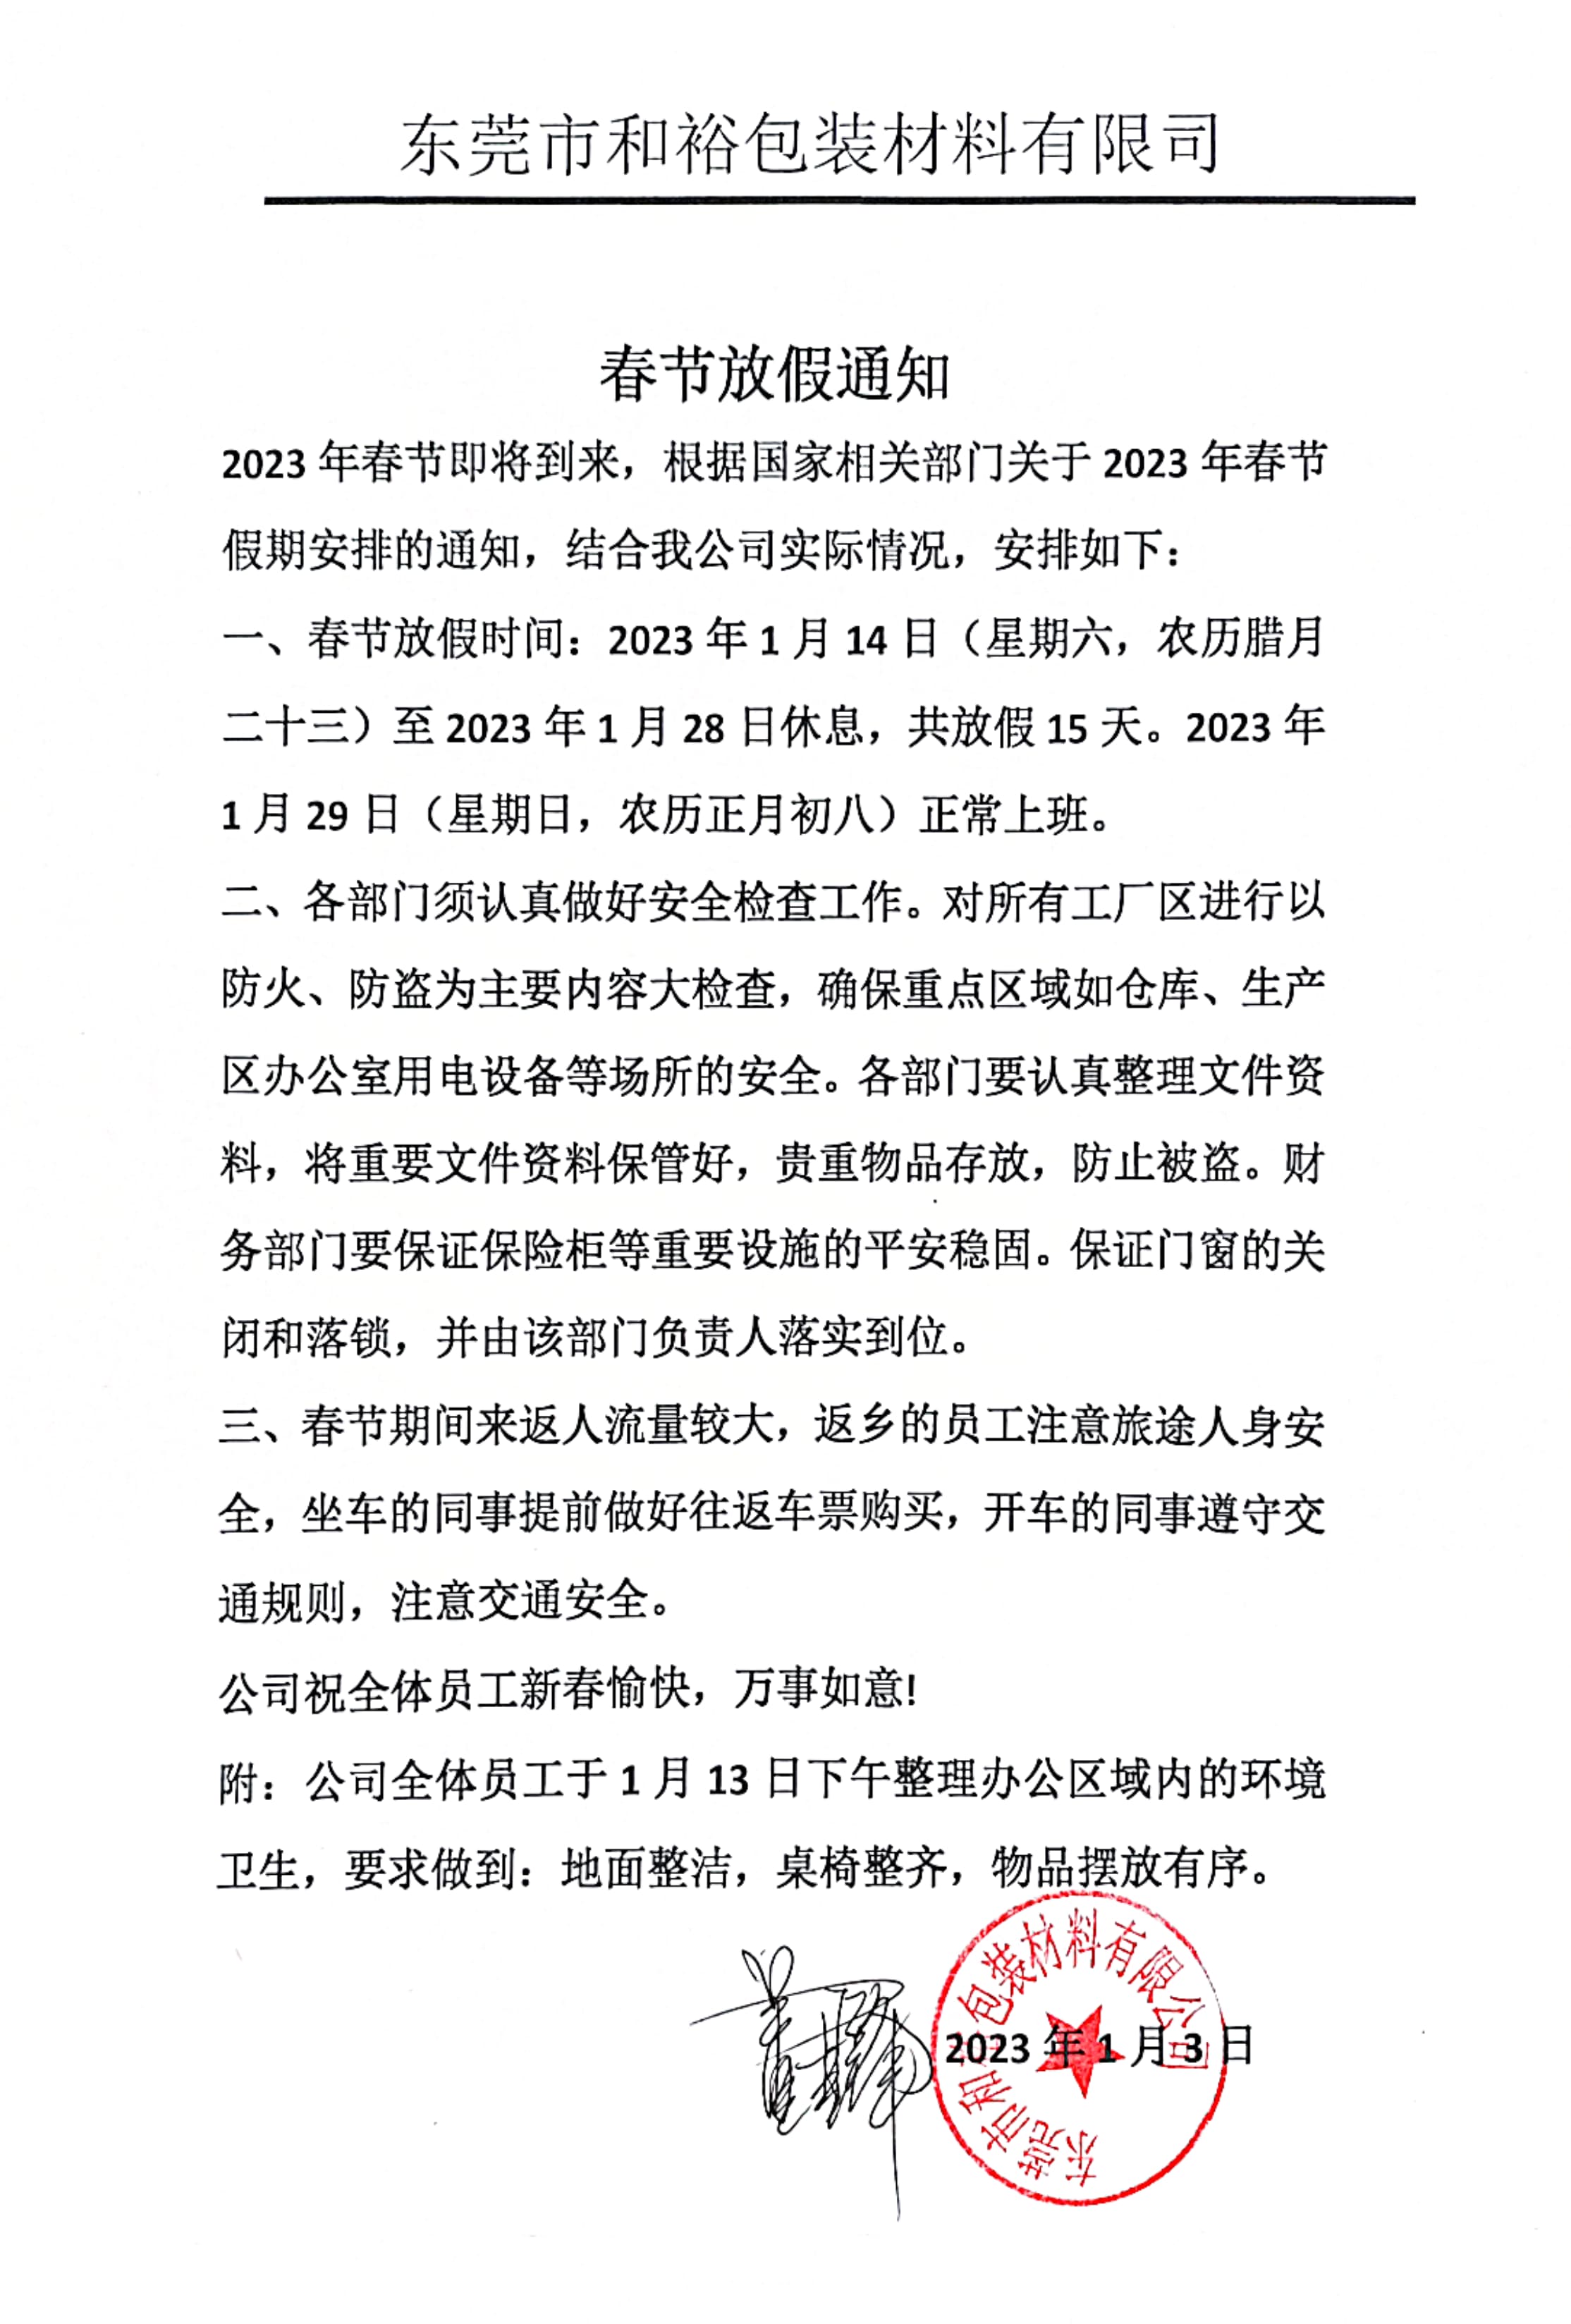 屯昌县2023年和裕包装春节放假通知